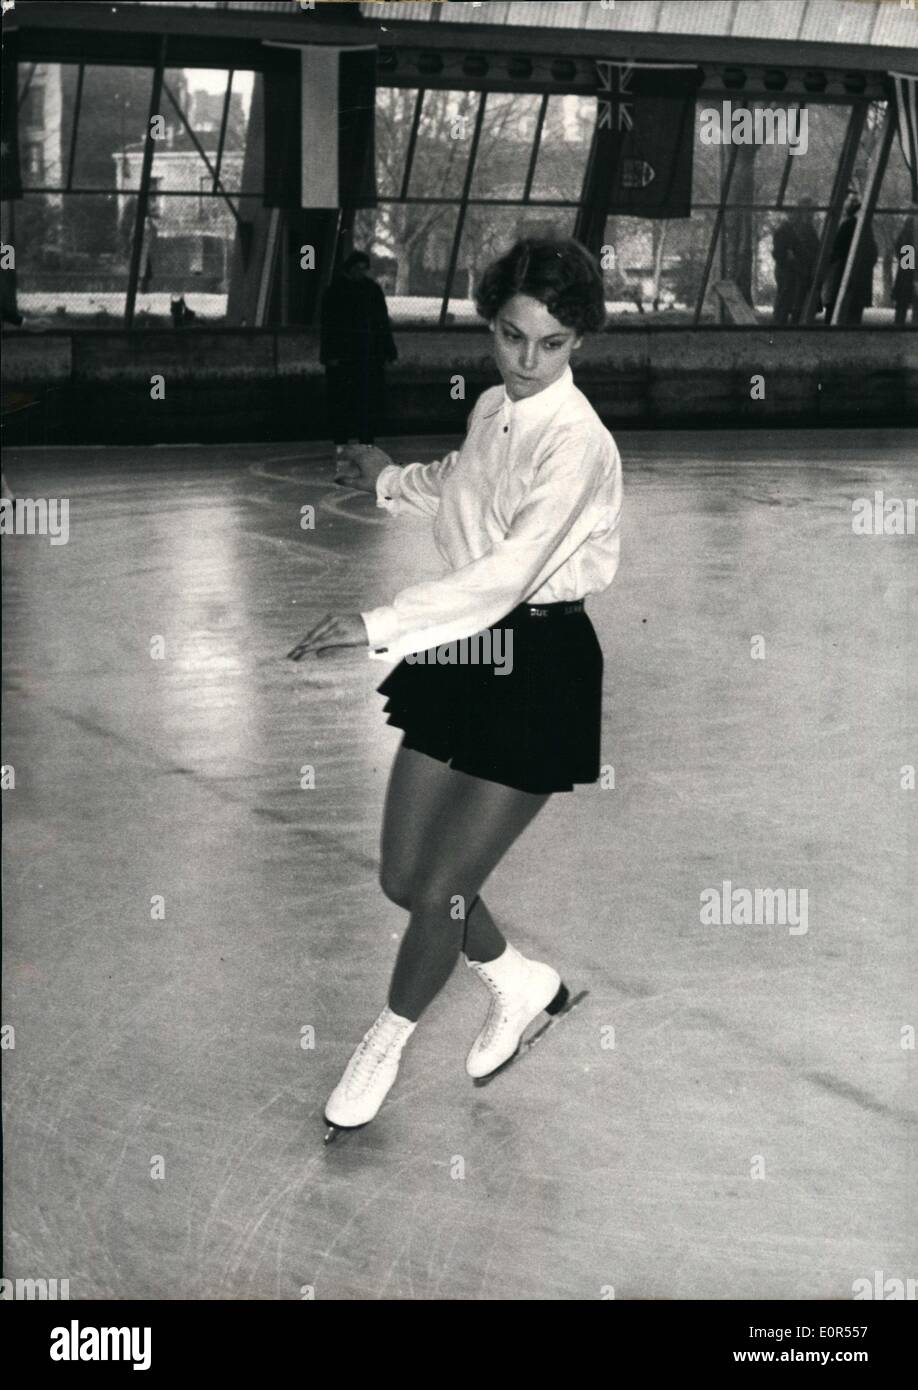 11 février, 1958 - américain de patinage sur glace, Carol Heiss en action Banque D'Images